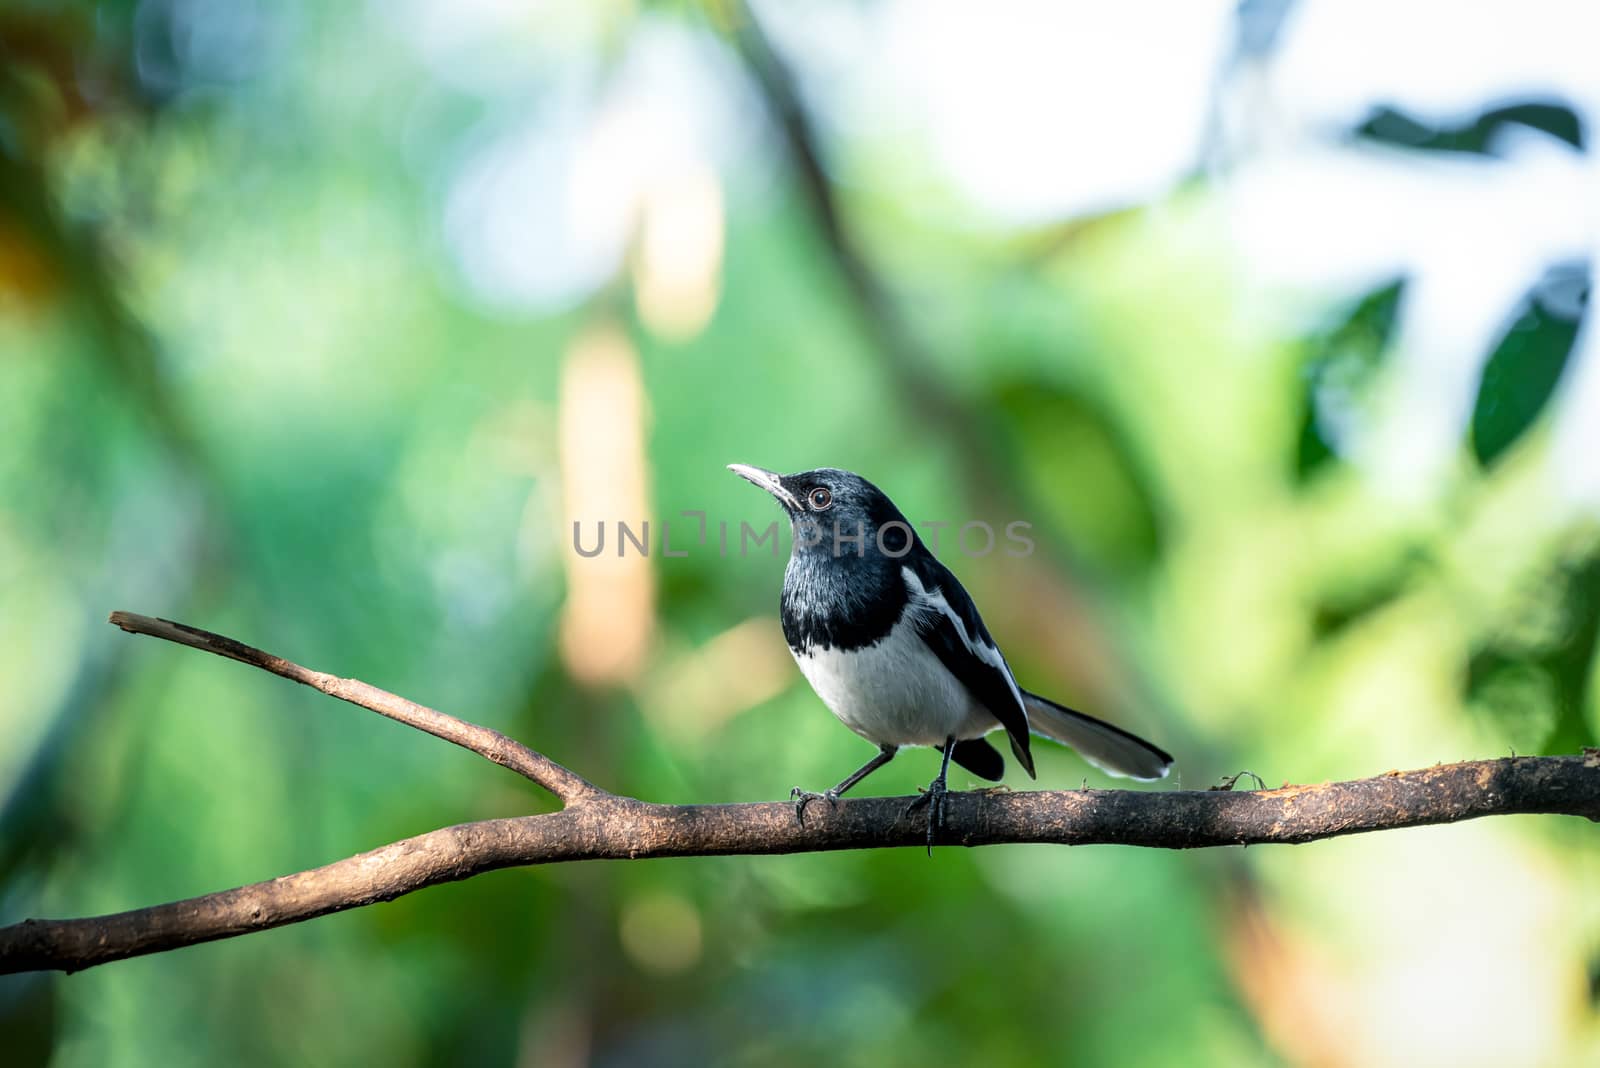 Bird (Oriental magpie-robin) in a nature wild by PongMoji